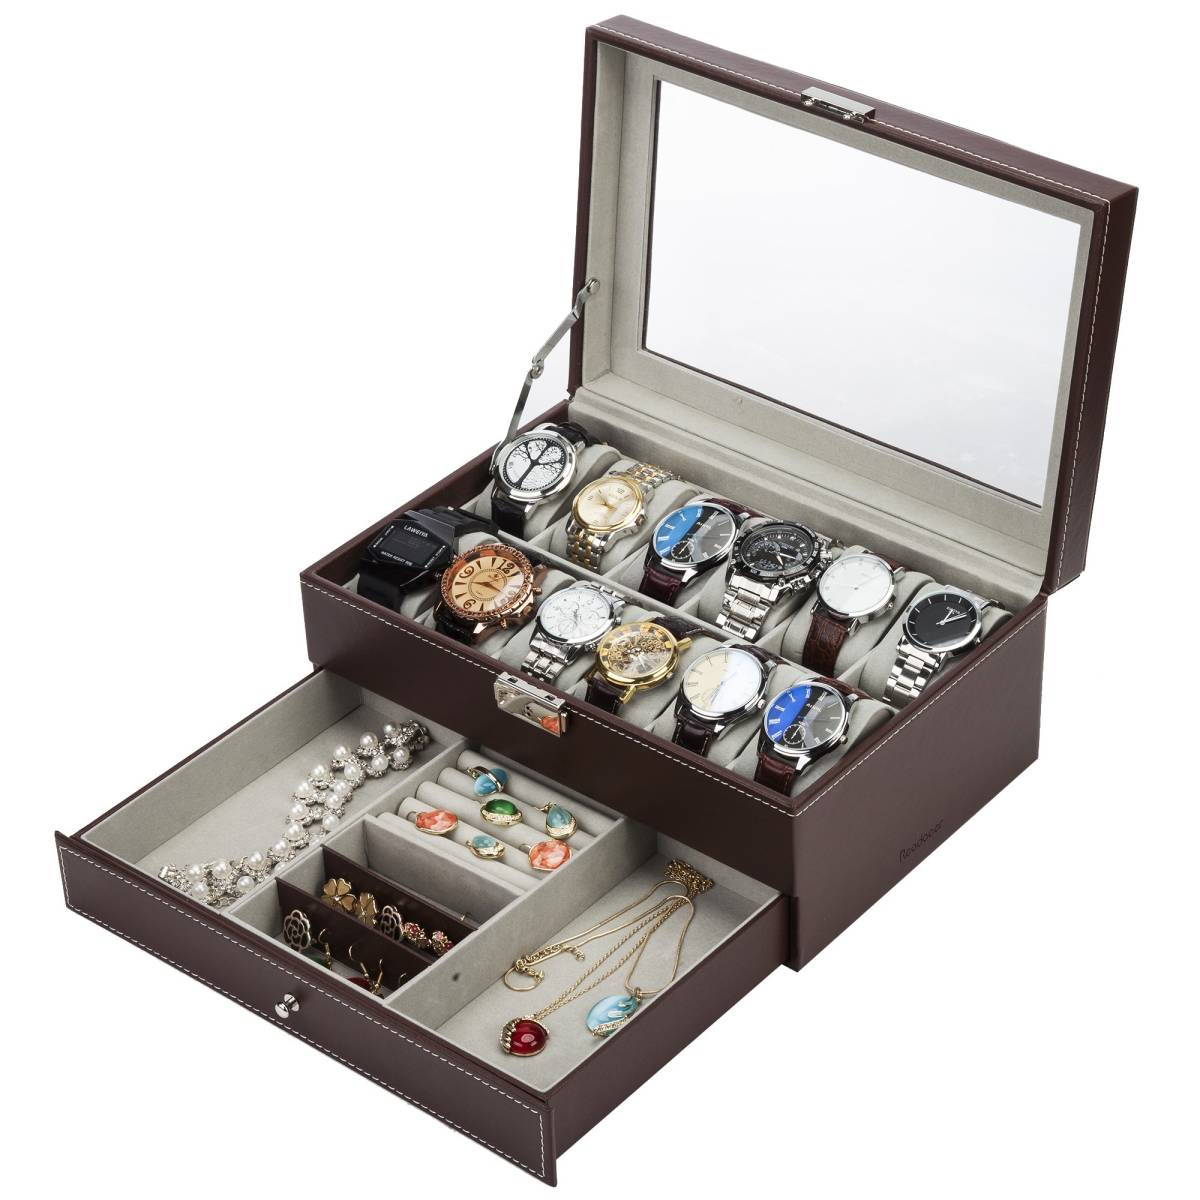 Reodoeer 腕時計収納ケース 腕時計収納ボックス 2段式 12本用 アクセサリー収納兼用 (ブラウン) の画像2